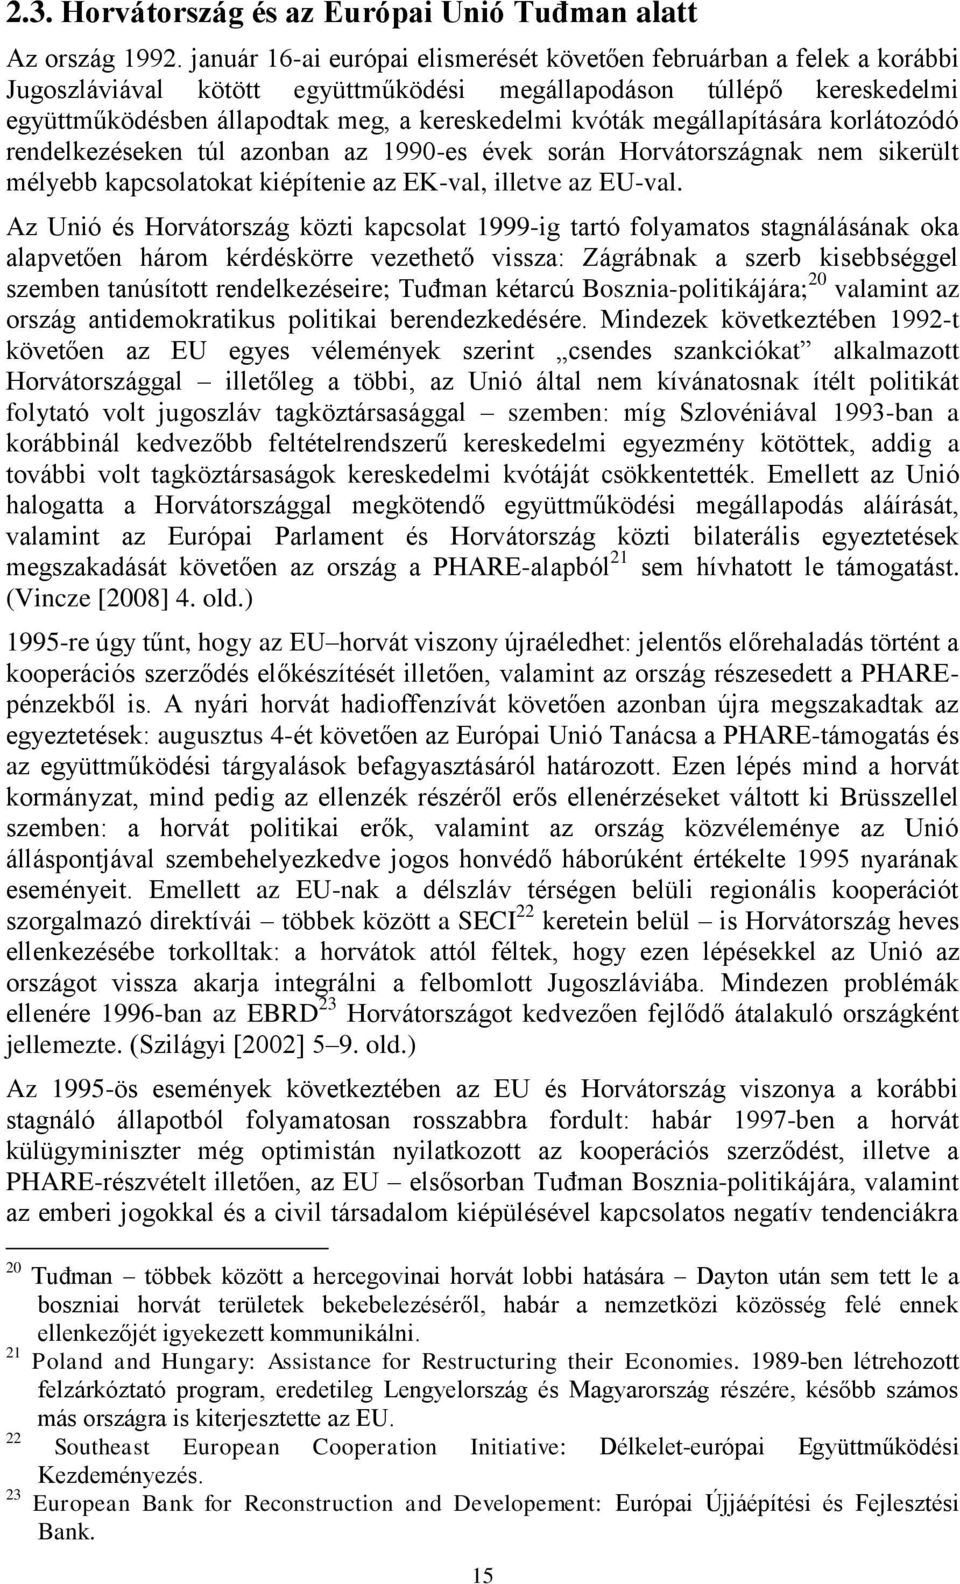 megállapítására korlátozódó rendelkezéseken túl azonban az 1990-es évek során Horvátországnak nem sikerült mélyebb kapcsolatokat kiépítenie az EK-val, illetve az EU-val.